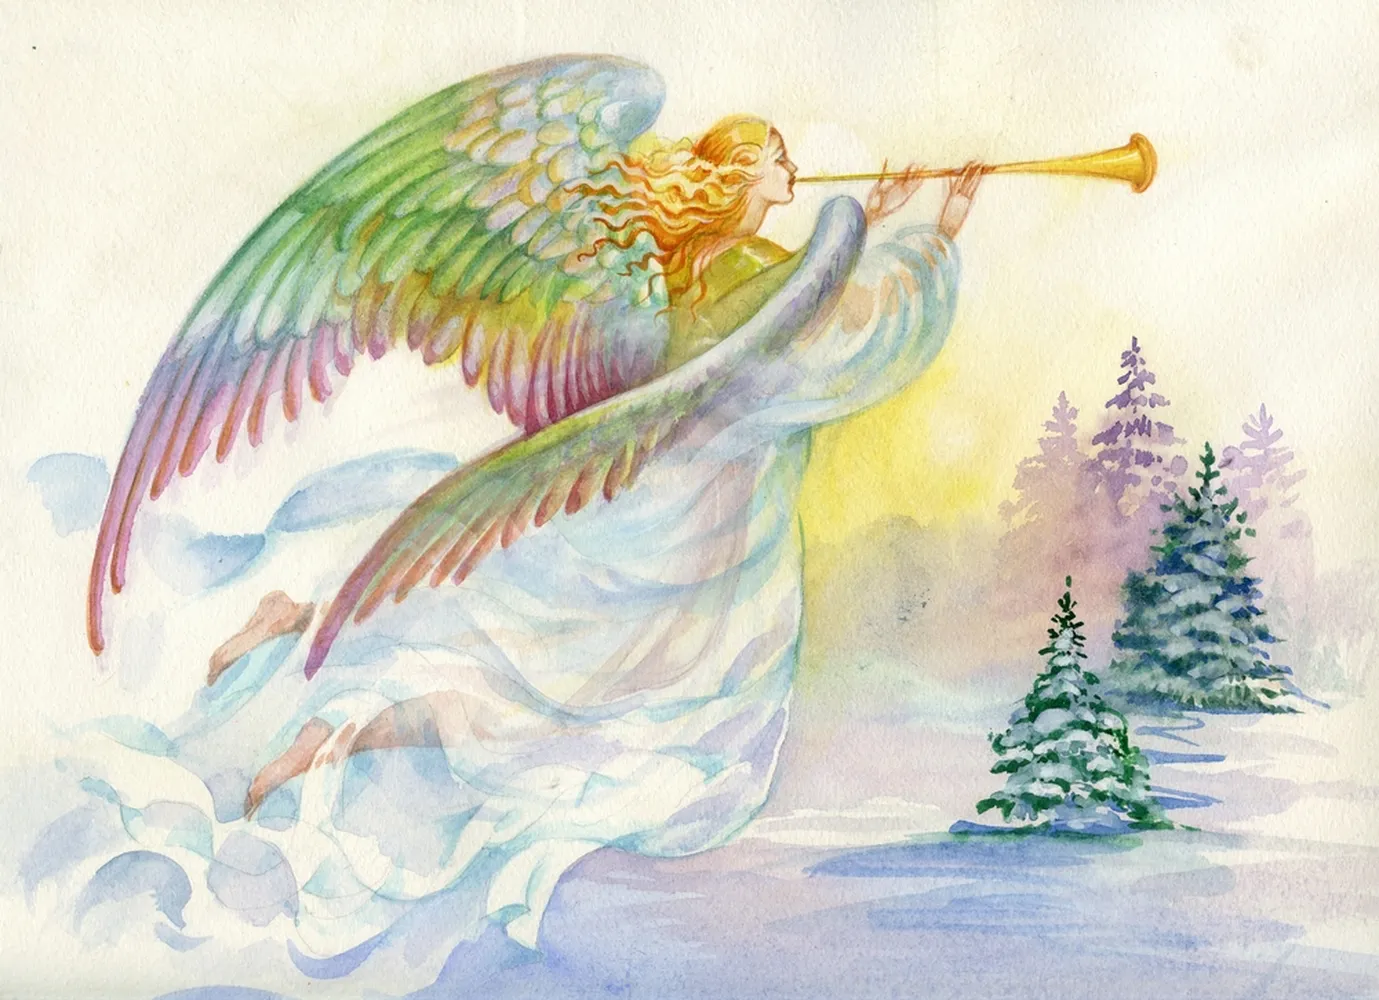 پوستر 3 بعدی فرشته نماد تبریک سال نو کریسمس